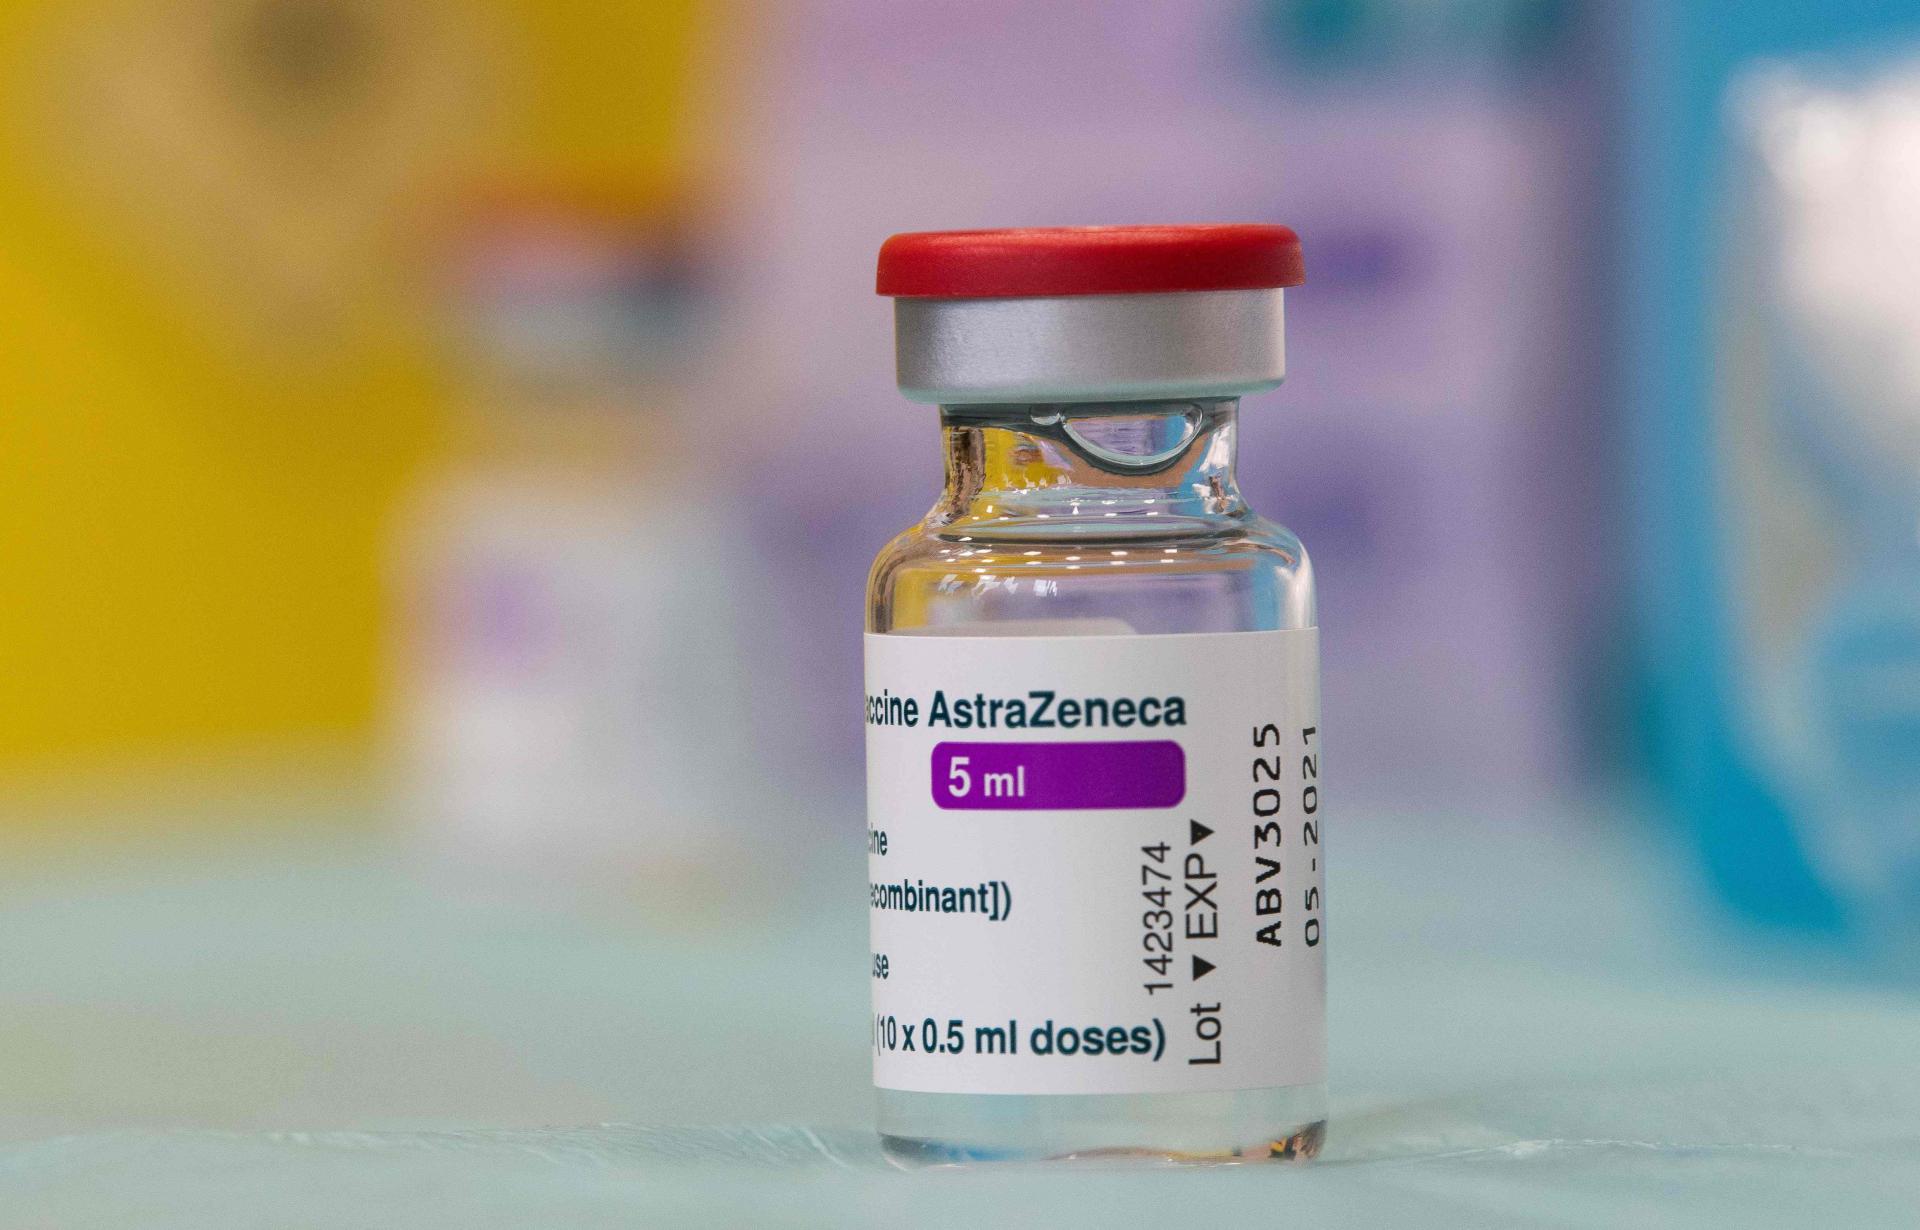 Slobodna Dalmacija - Umirovljenici su toliko dugo čekali cjepivo, a sada kada je stiglo, zavladala je totalna zbrka jer AstraZeneca nije njihov prvi izbor. Što im je činiti?